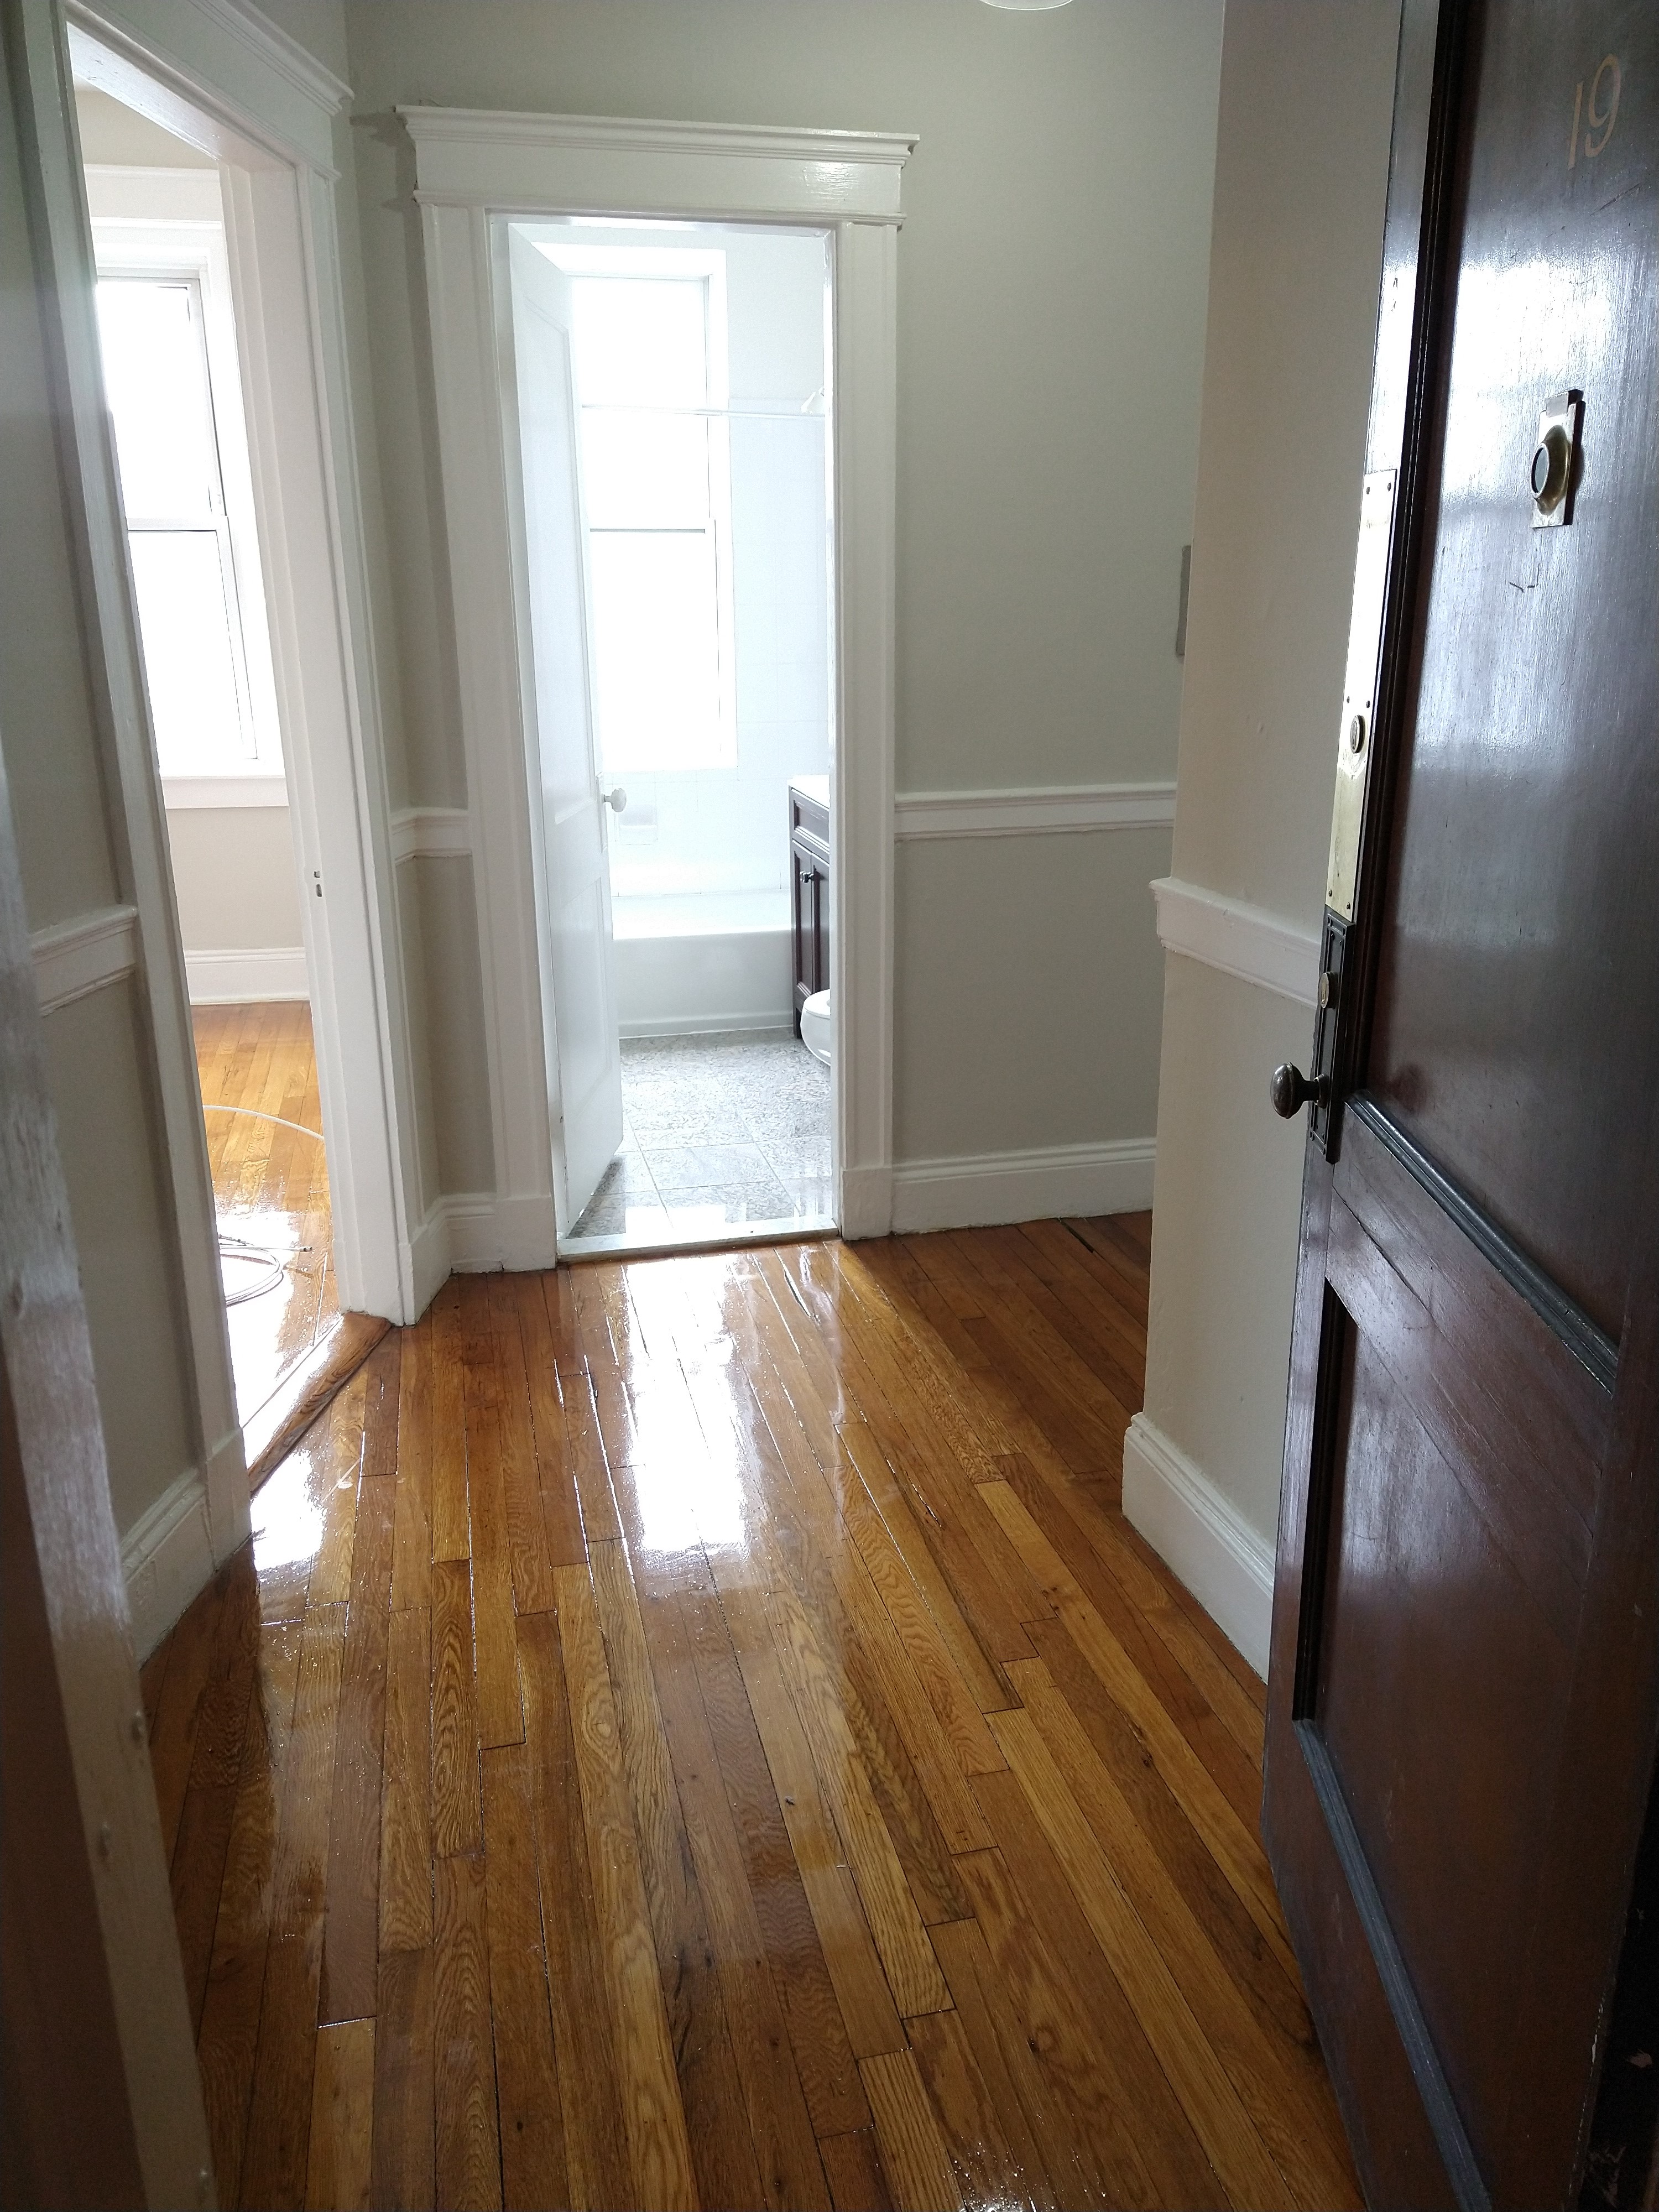 Studio, 1 Bath apartment in Boston, Allston for $1,950